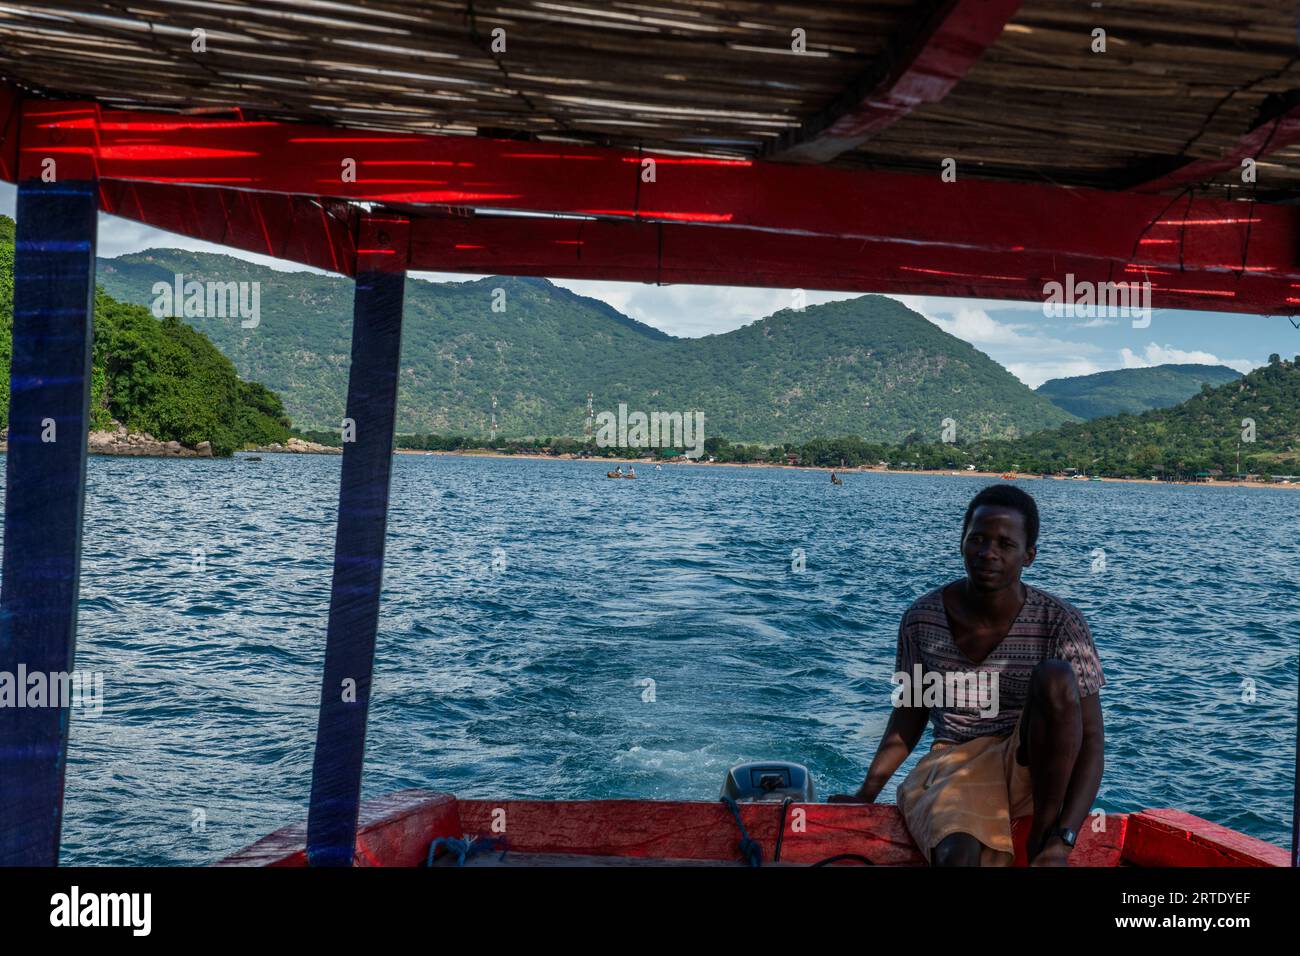 Cape Maclear, Malawi. Un istruttore di immersioni subacquee su una barca in Malawi. Solo per uso editoriale. Foto Stock